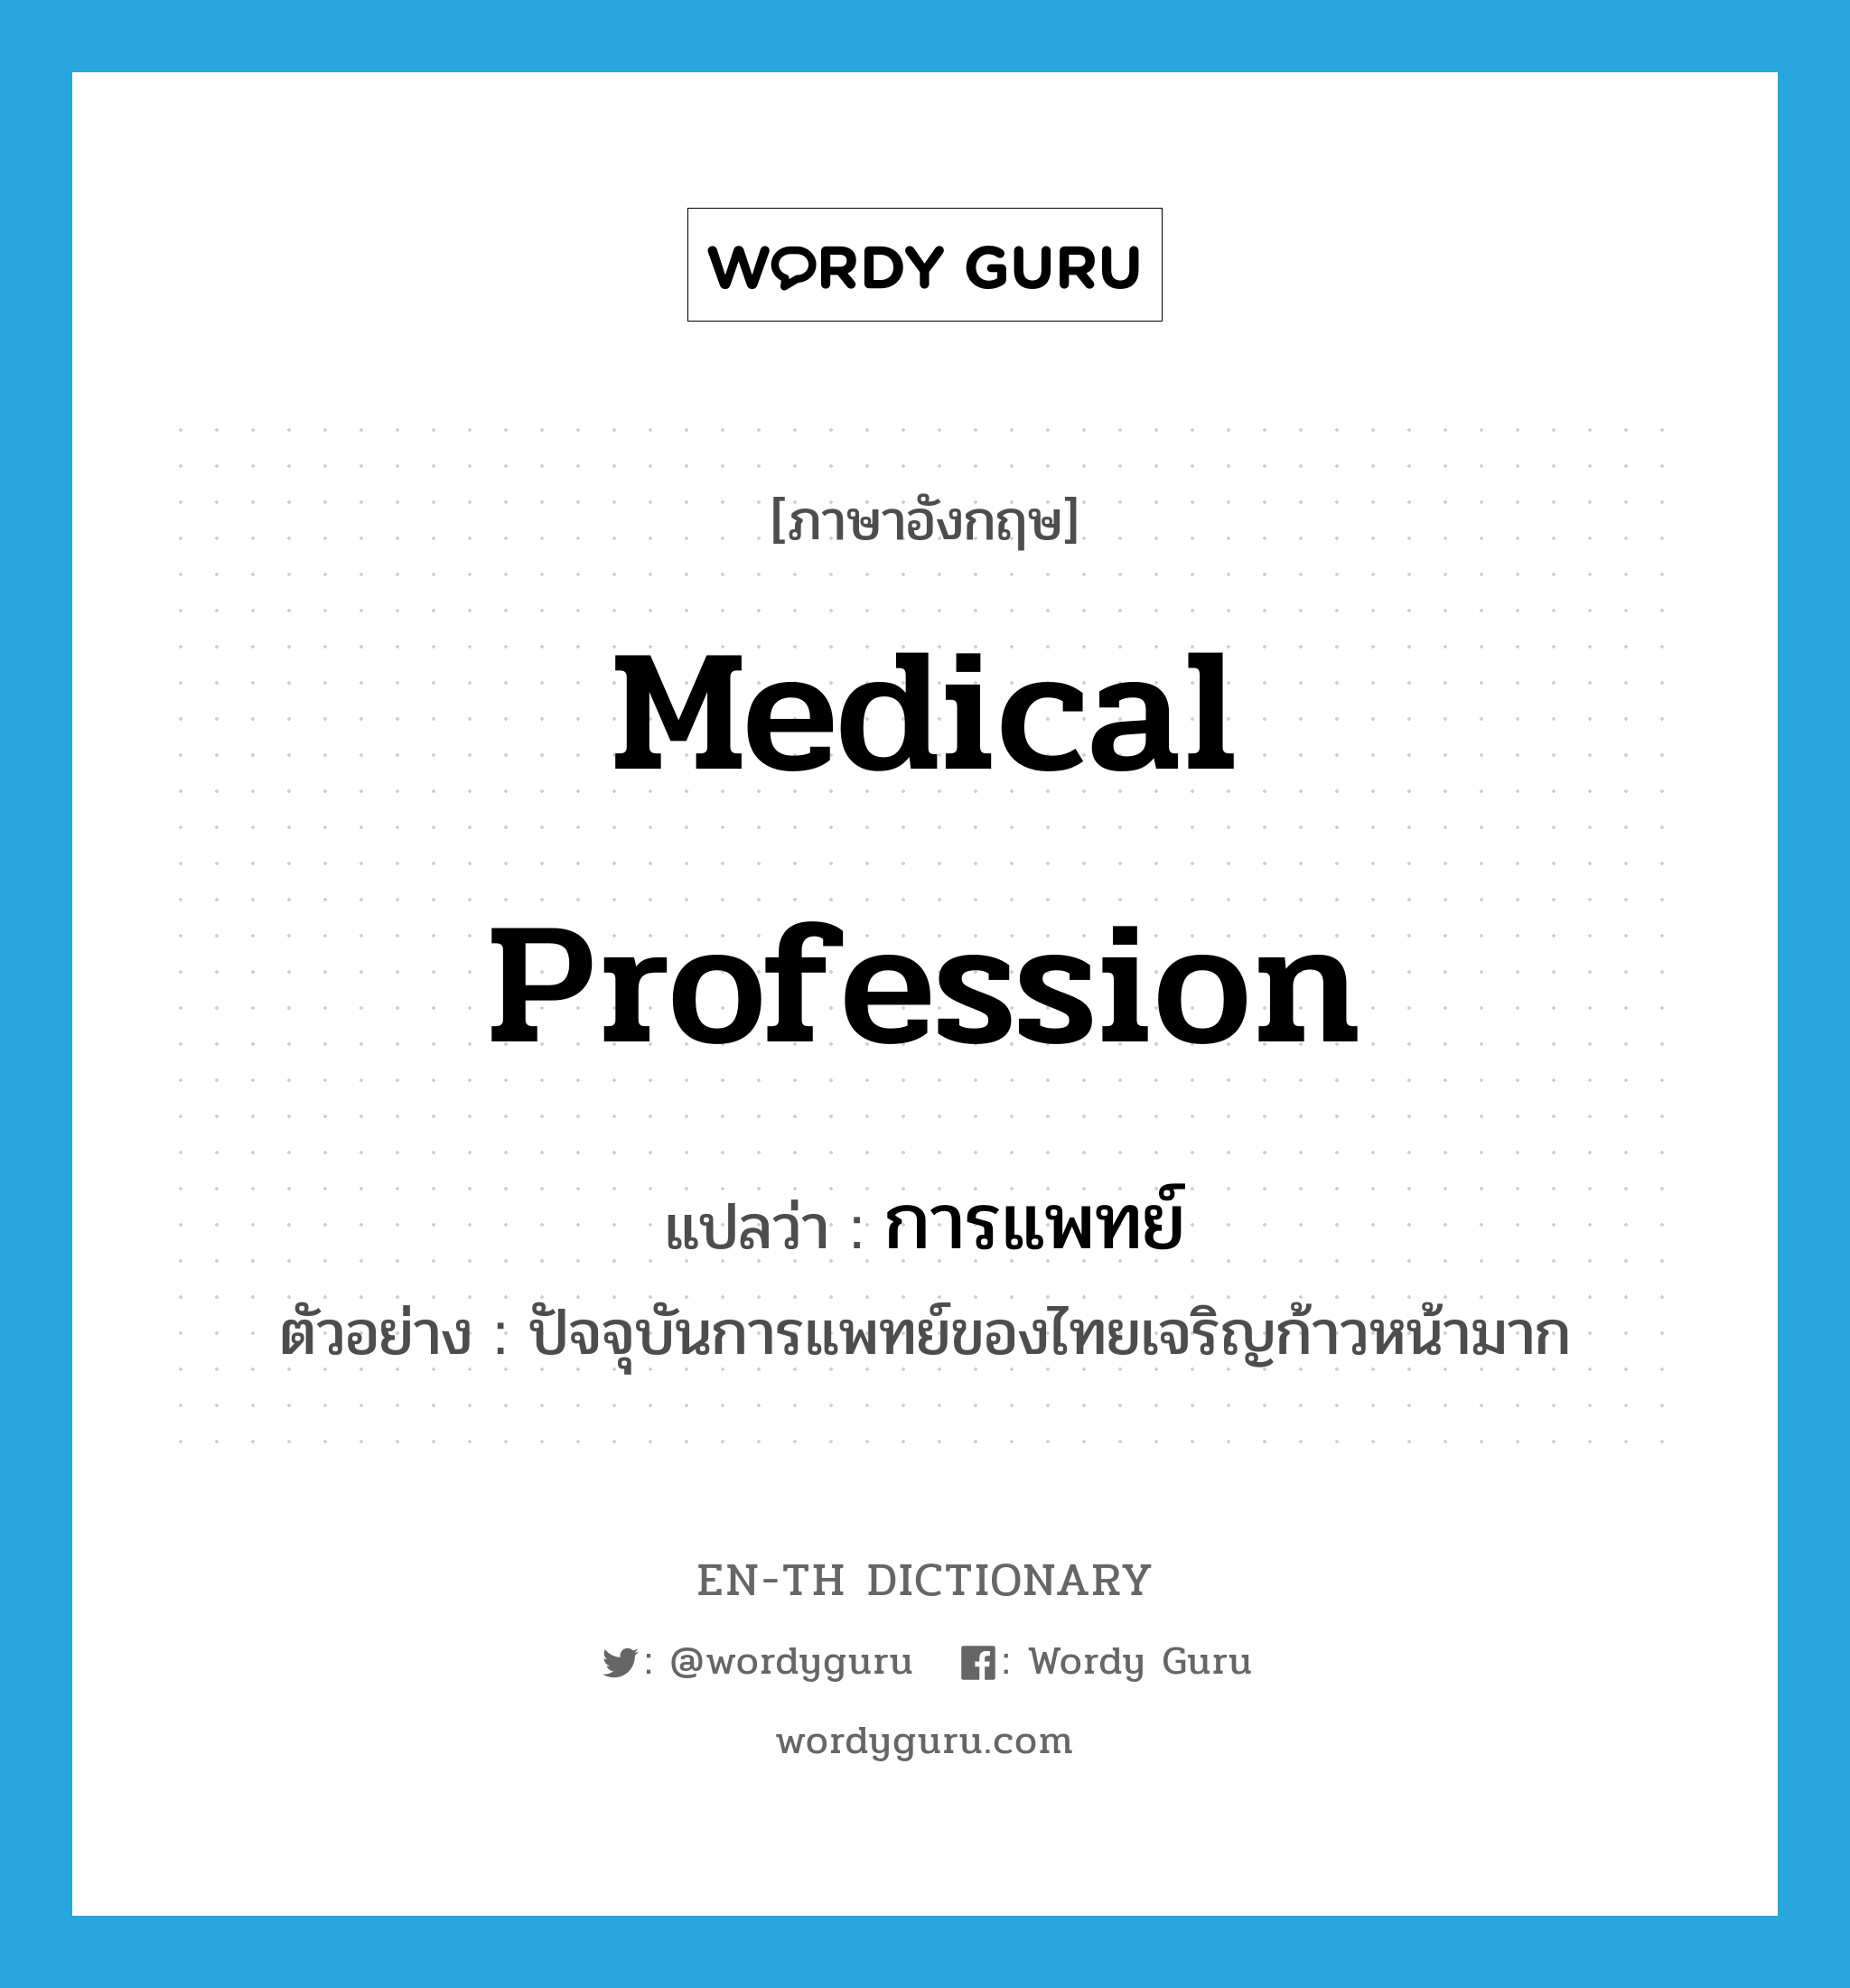 การแพทย์ ภาษาอังกฤษ?, คำศัพท์ภาษาอังกฤษ การแพทย์ แปลว่า medical profession ประเภท N ตัวอย่าง ปัจจุบันการแพทย์ของไทยเจริญก้าวหน้ามาก หมวด N